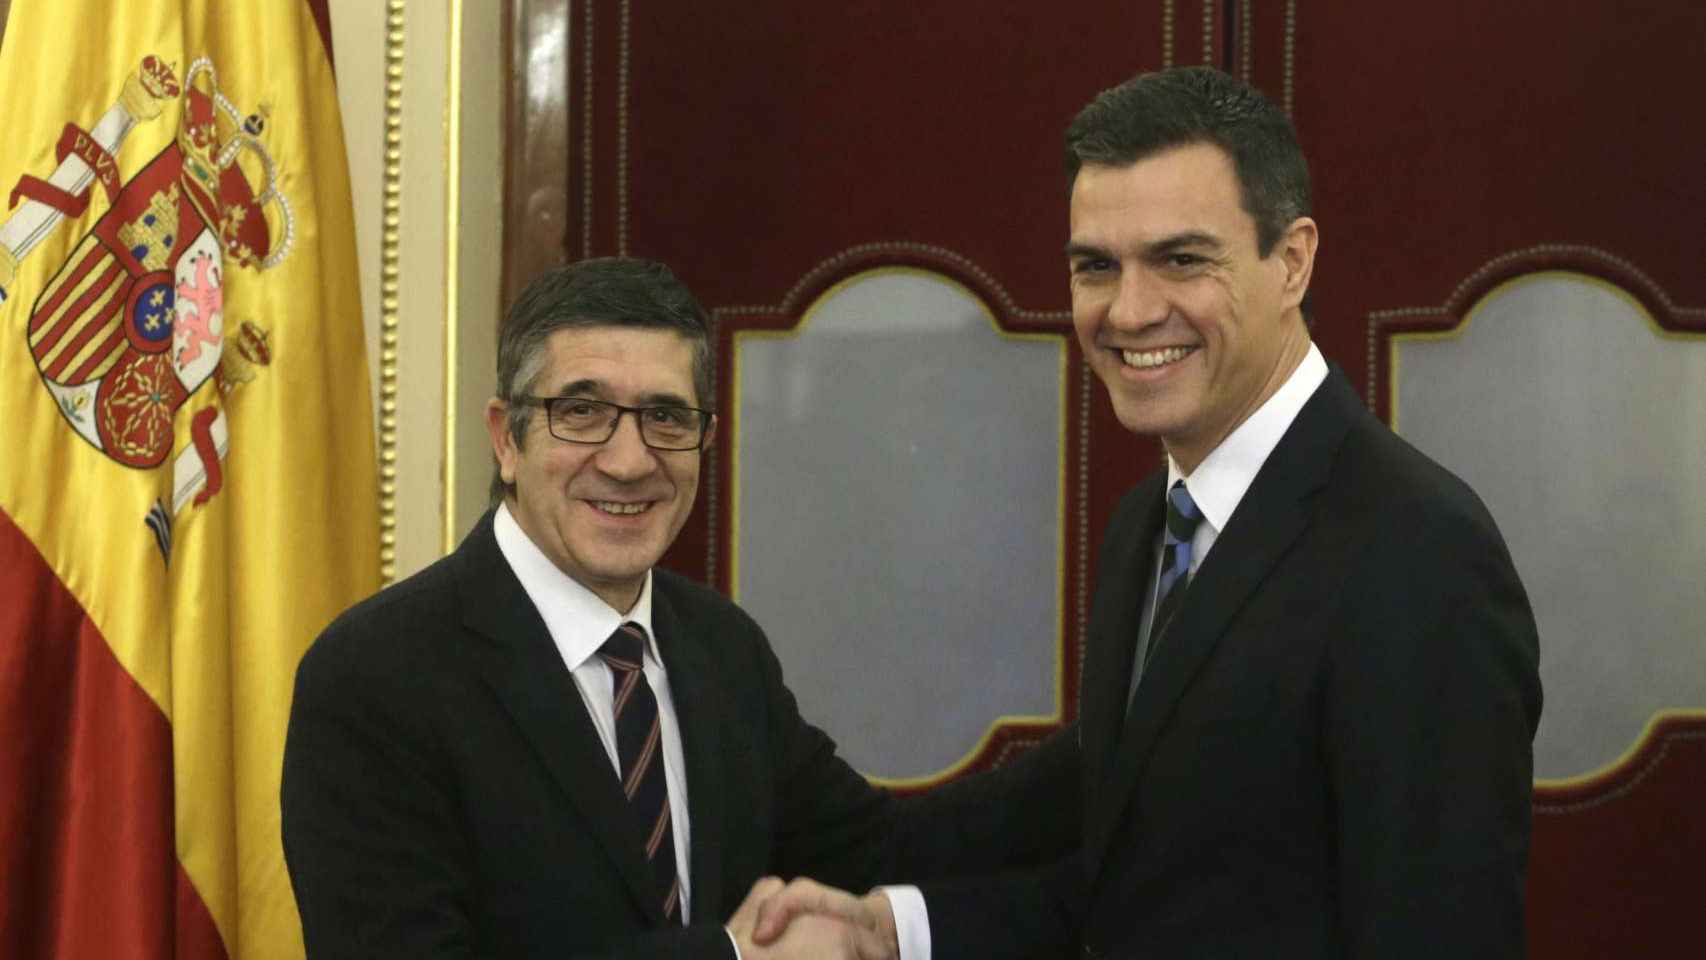 El presidente del Congreso, Patxi López, ha recibido hoy al secretario general del PSOE, Pedro Sánchez